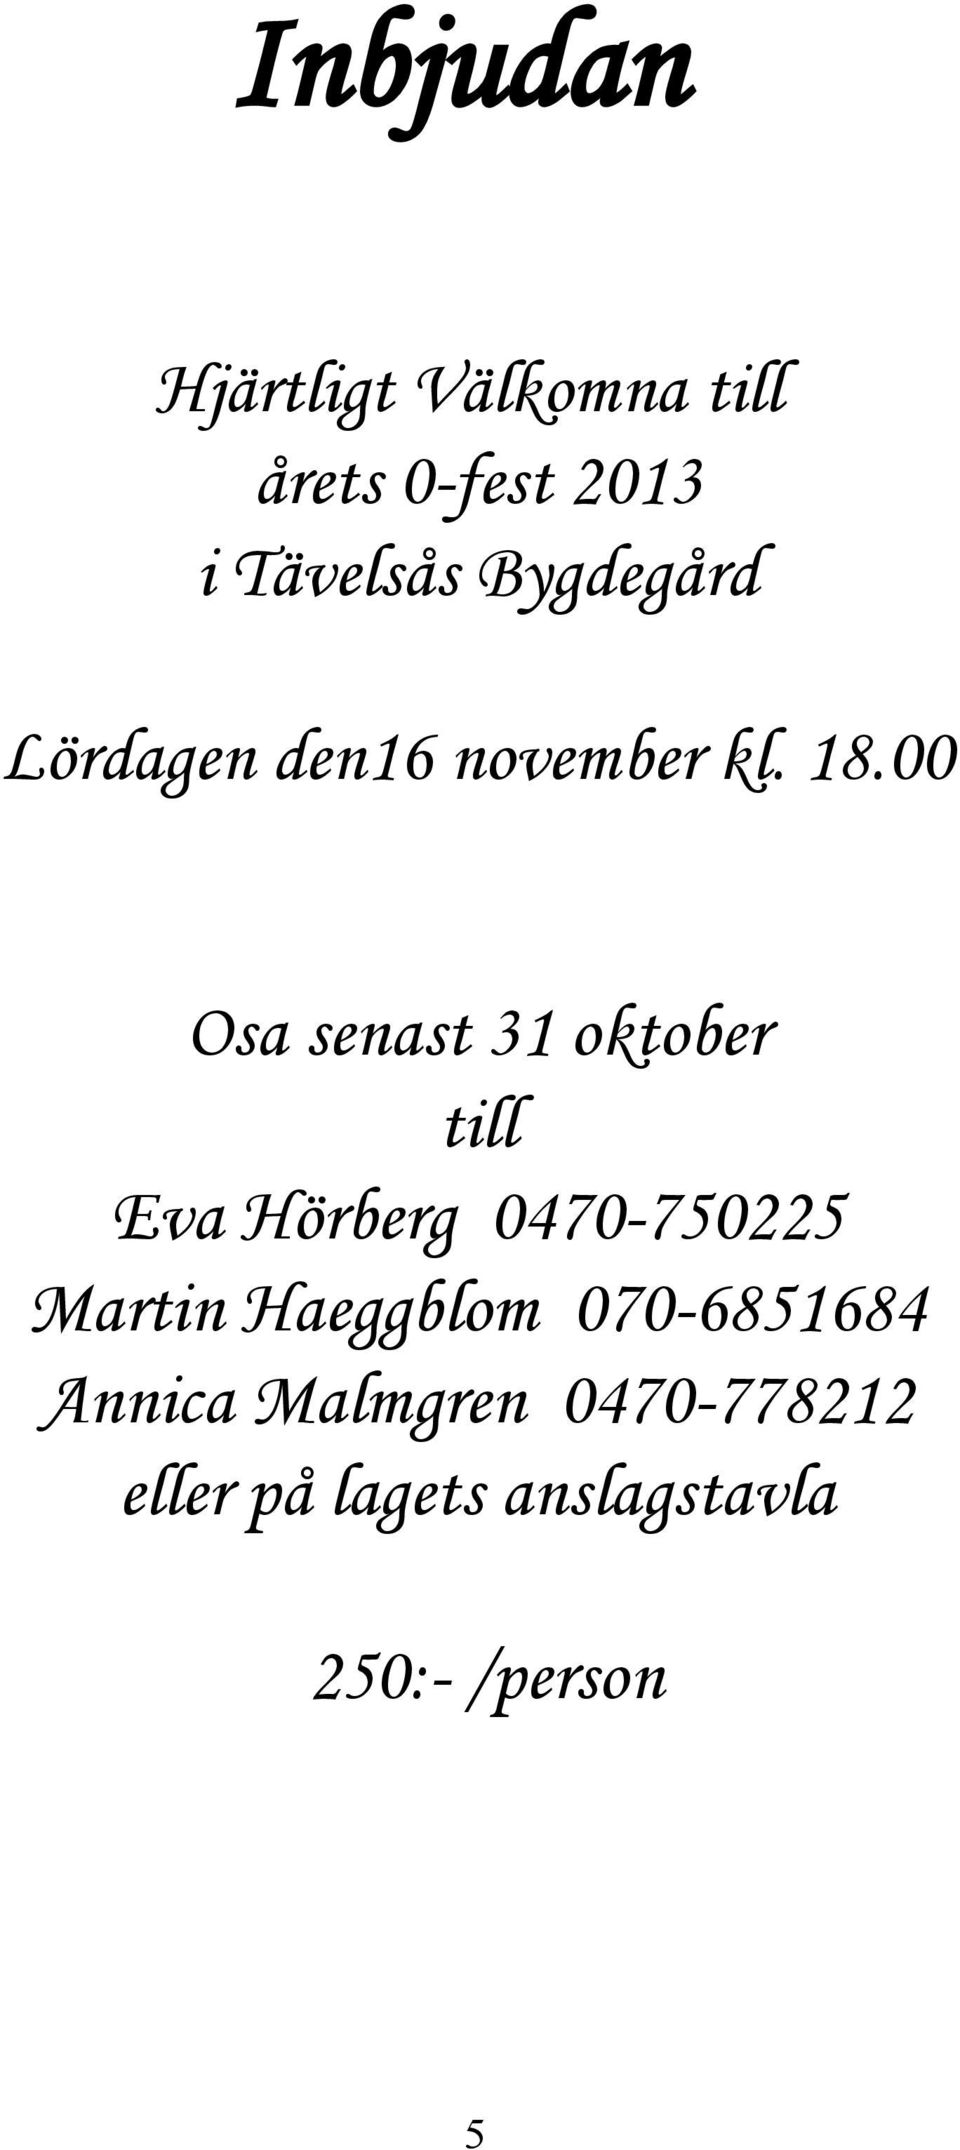 00 Osa senast 31 oktober till Eva Hörberg 0470-750225 Martin